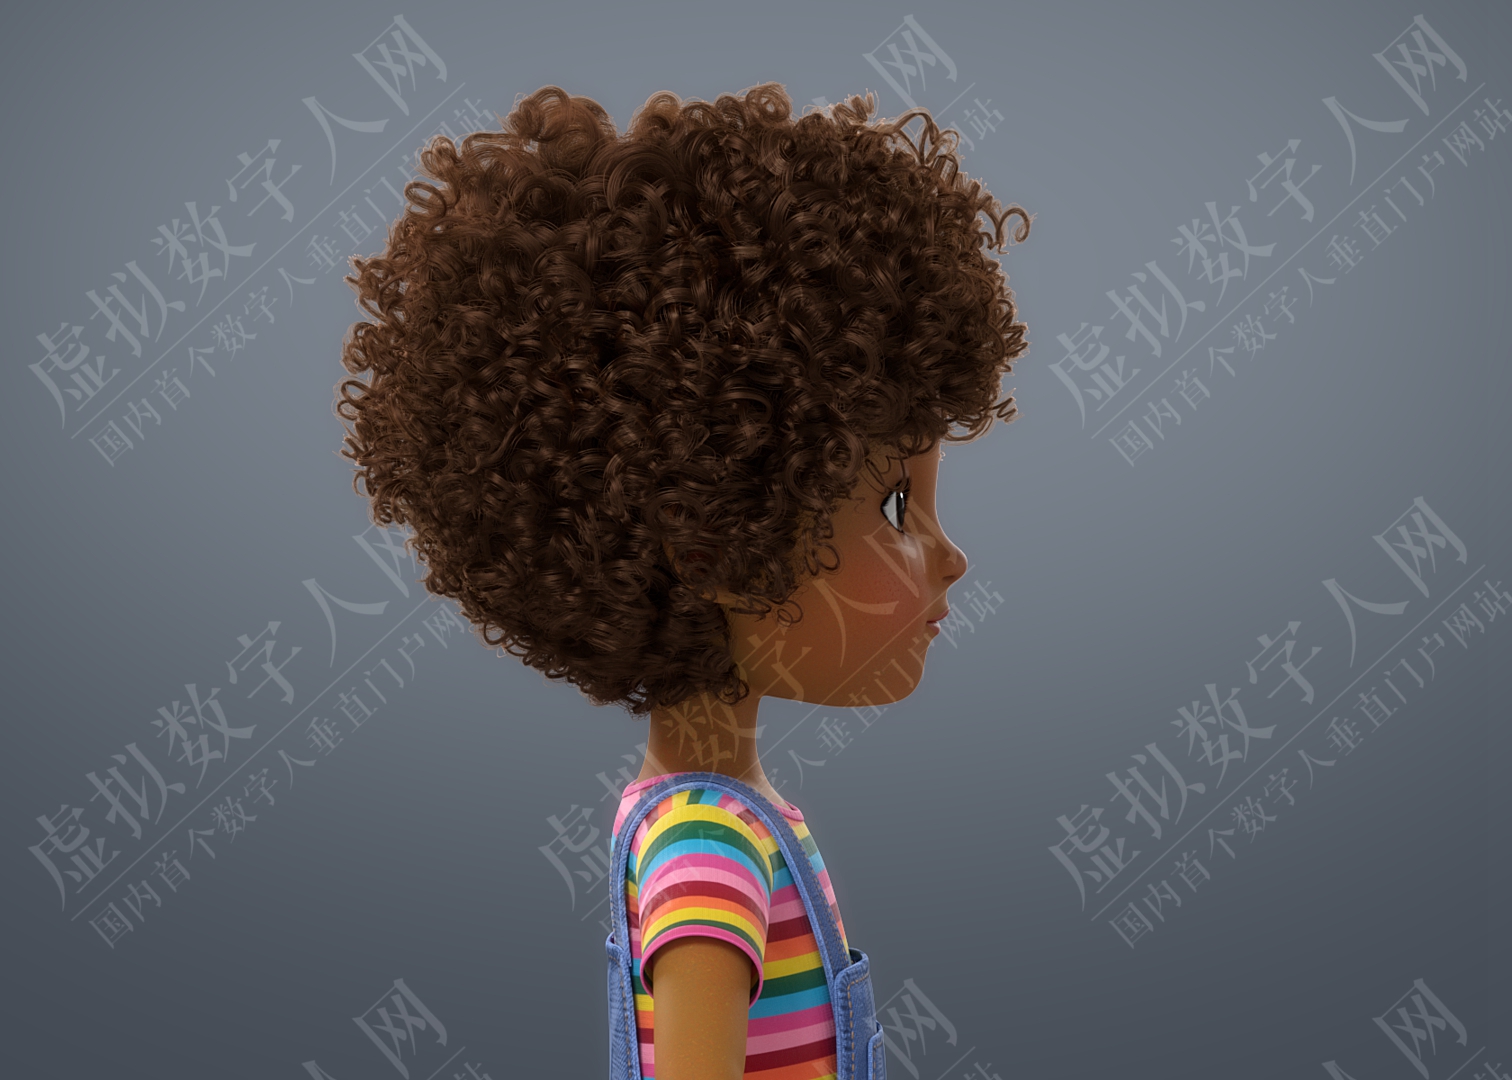 卡通黑人女孩操纵3D数字人模型